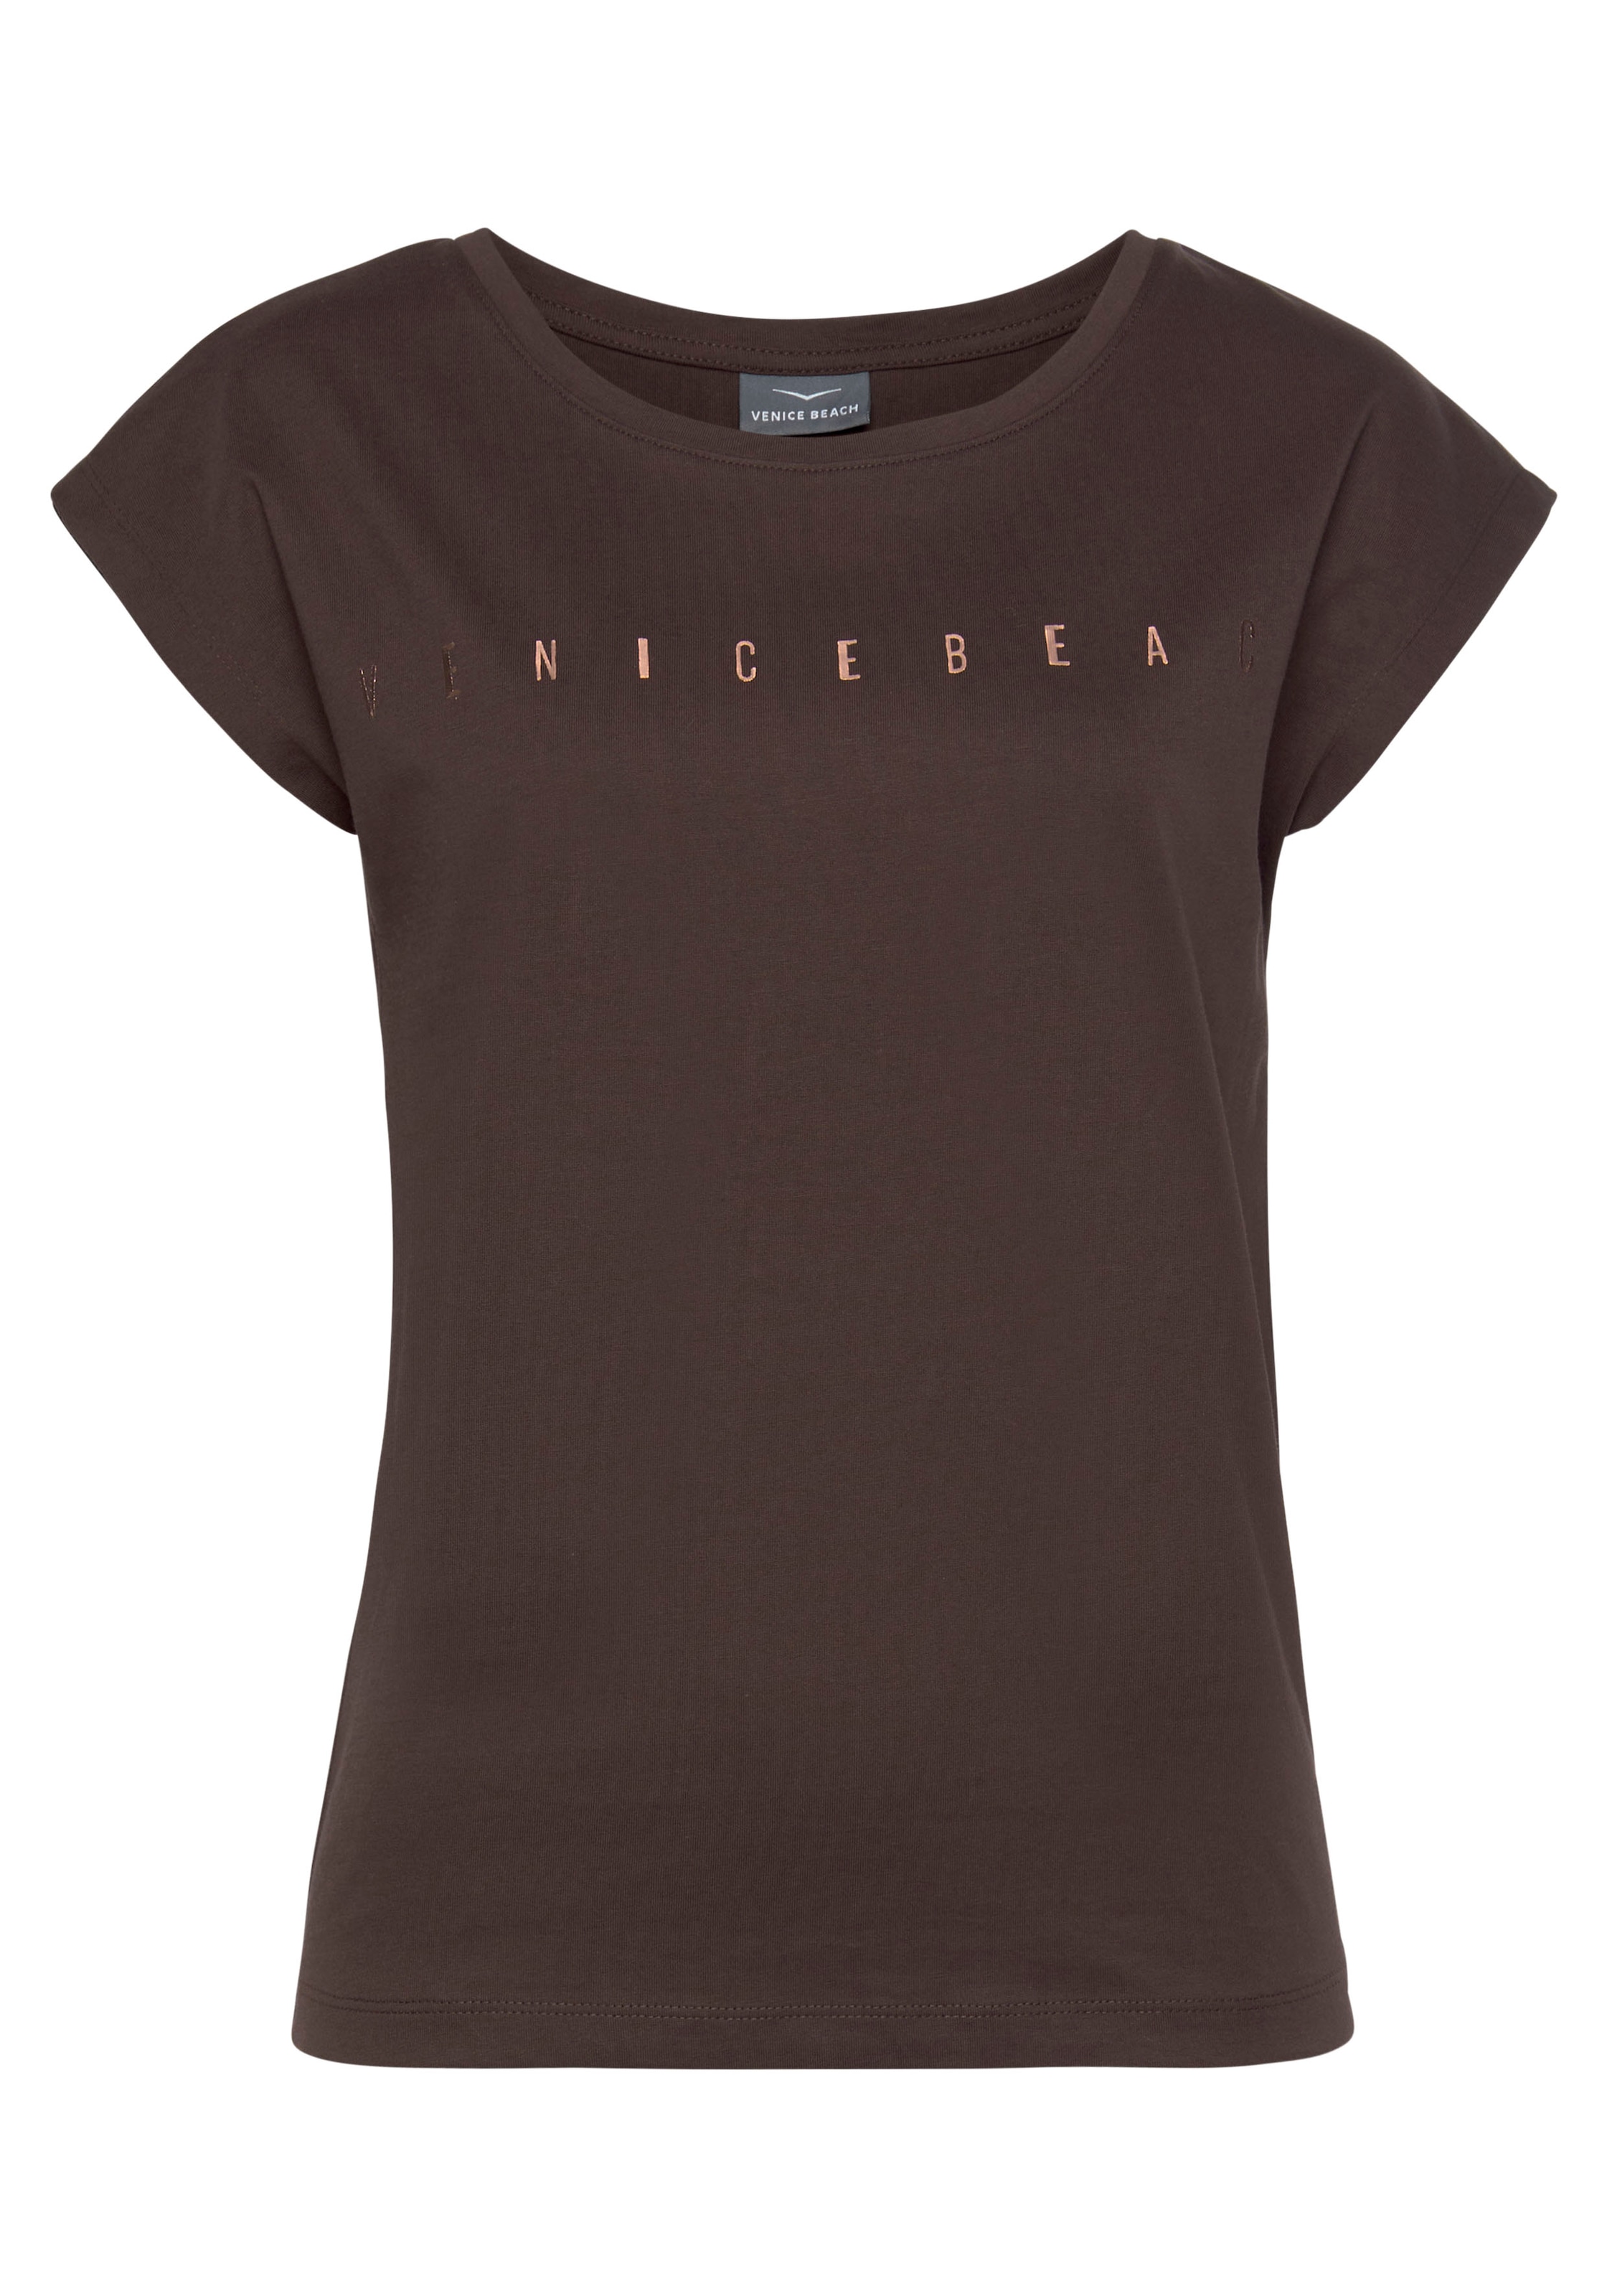 T-Shirt glänzendem Kurzarmshirt, Beach Venice kaufen Logodruck, mit Baumwolle aus